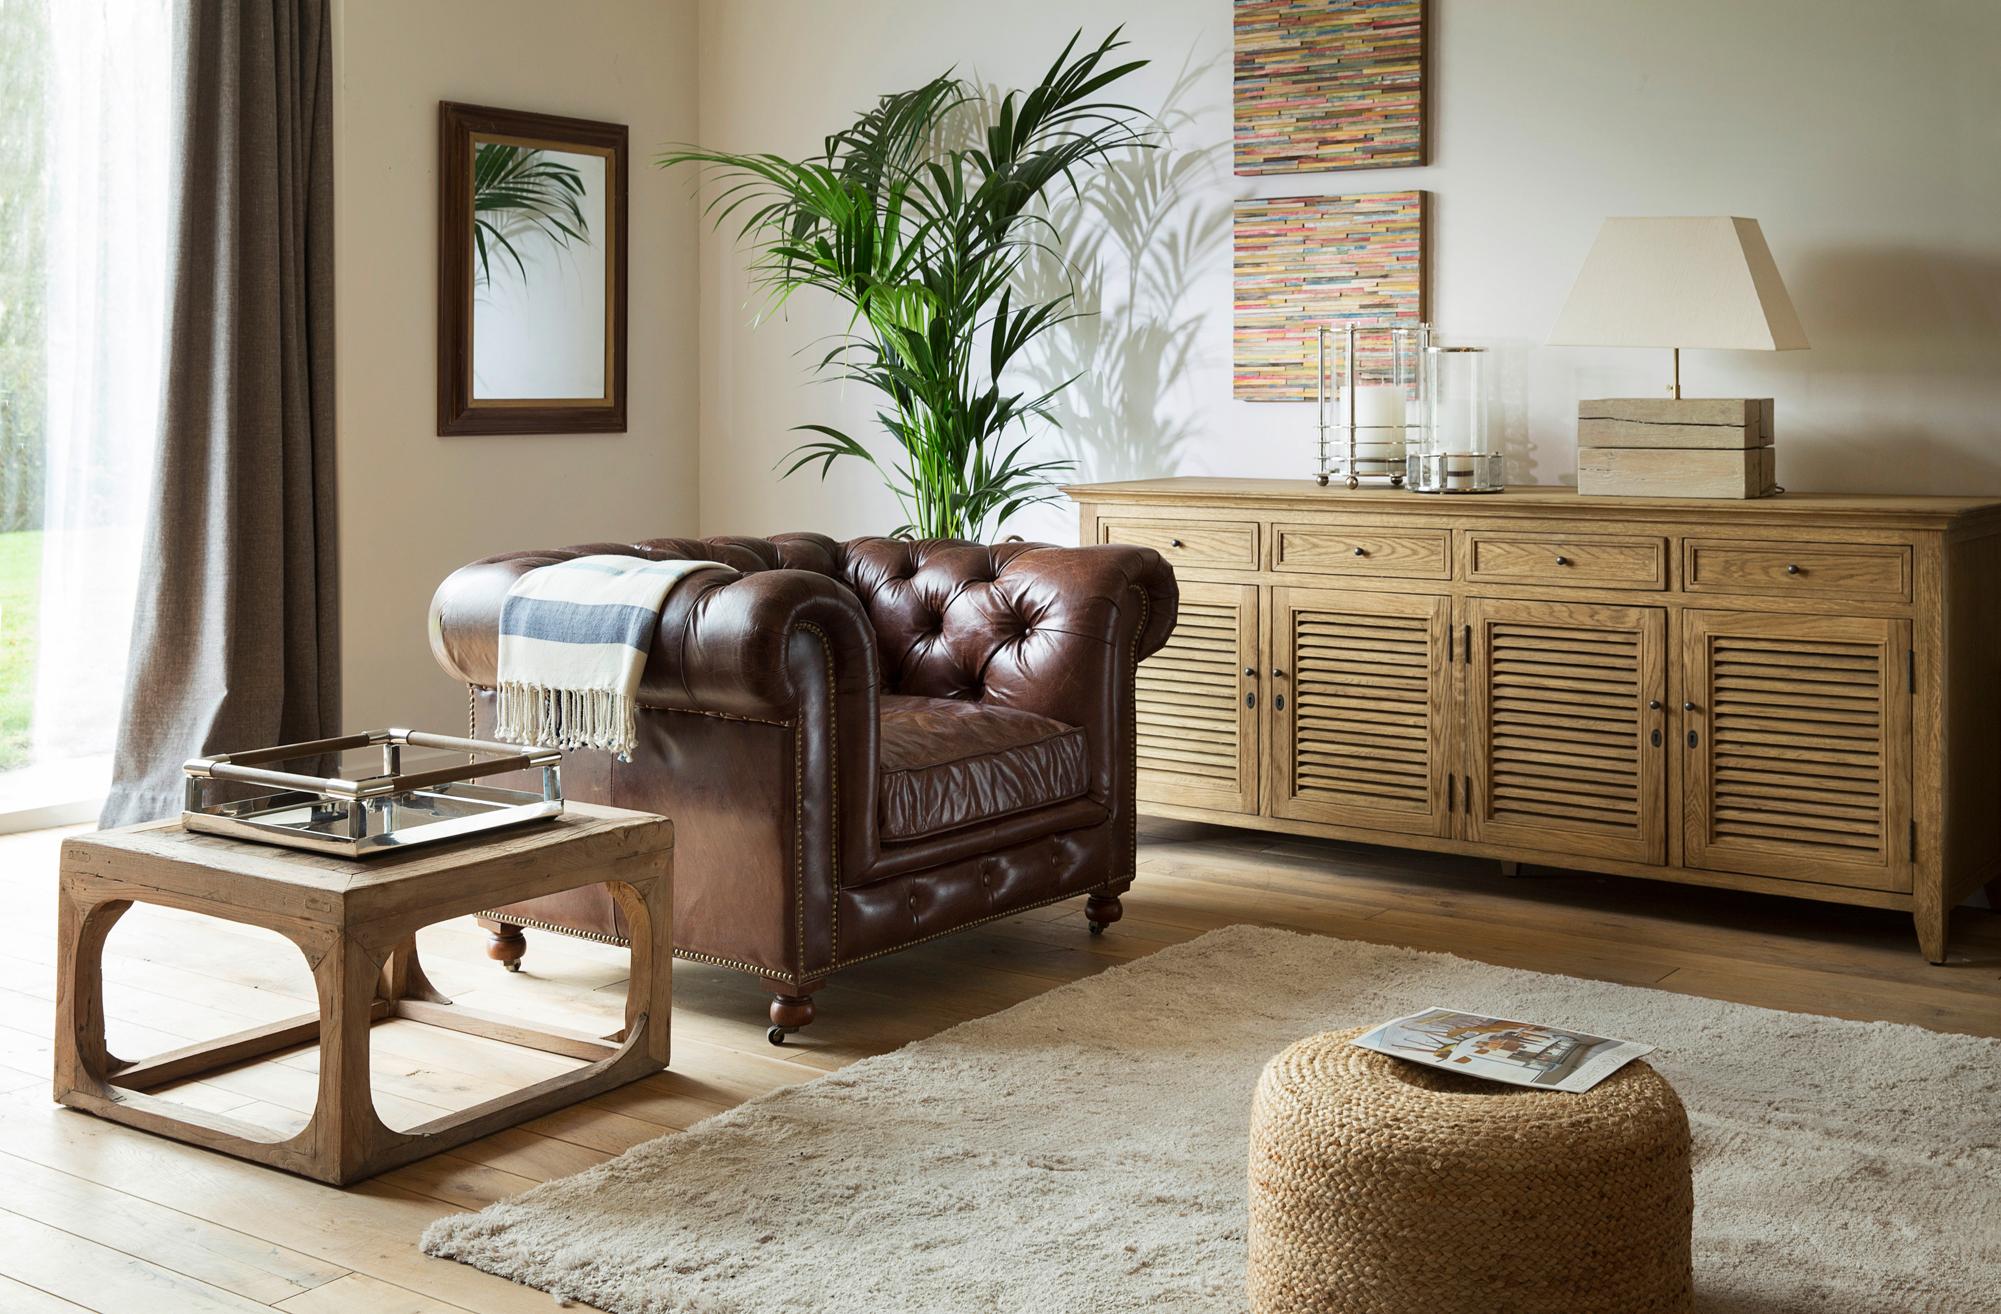 Ledersessel und natürlicher Look #beistelltisch #wohnzimmer #sideboard #braunerledersessel #zimmergestaltung ©Flamant